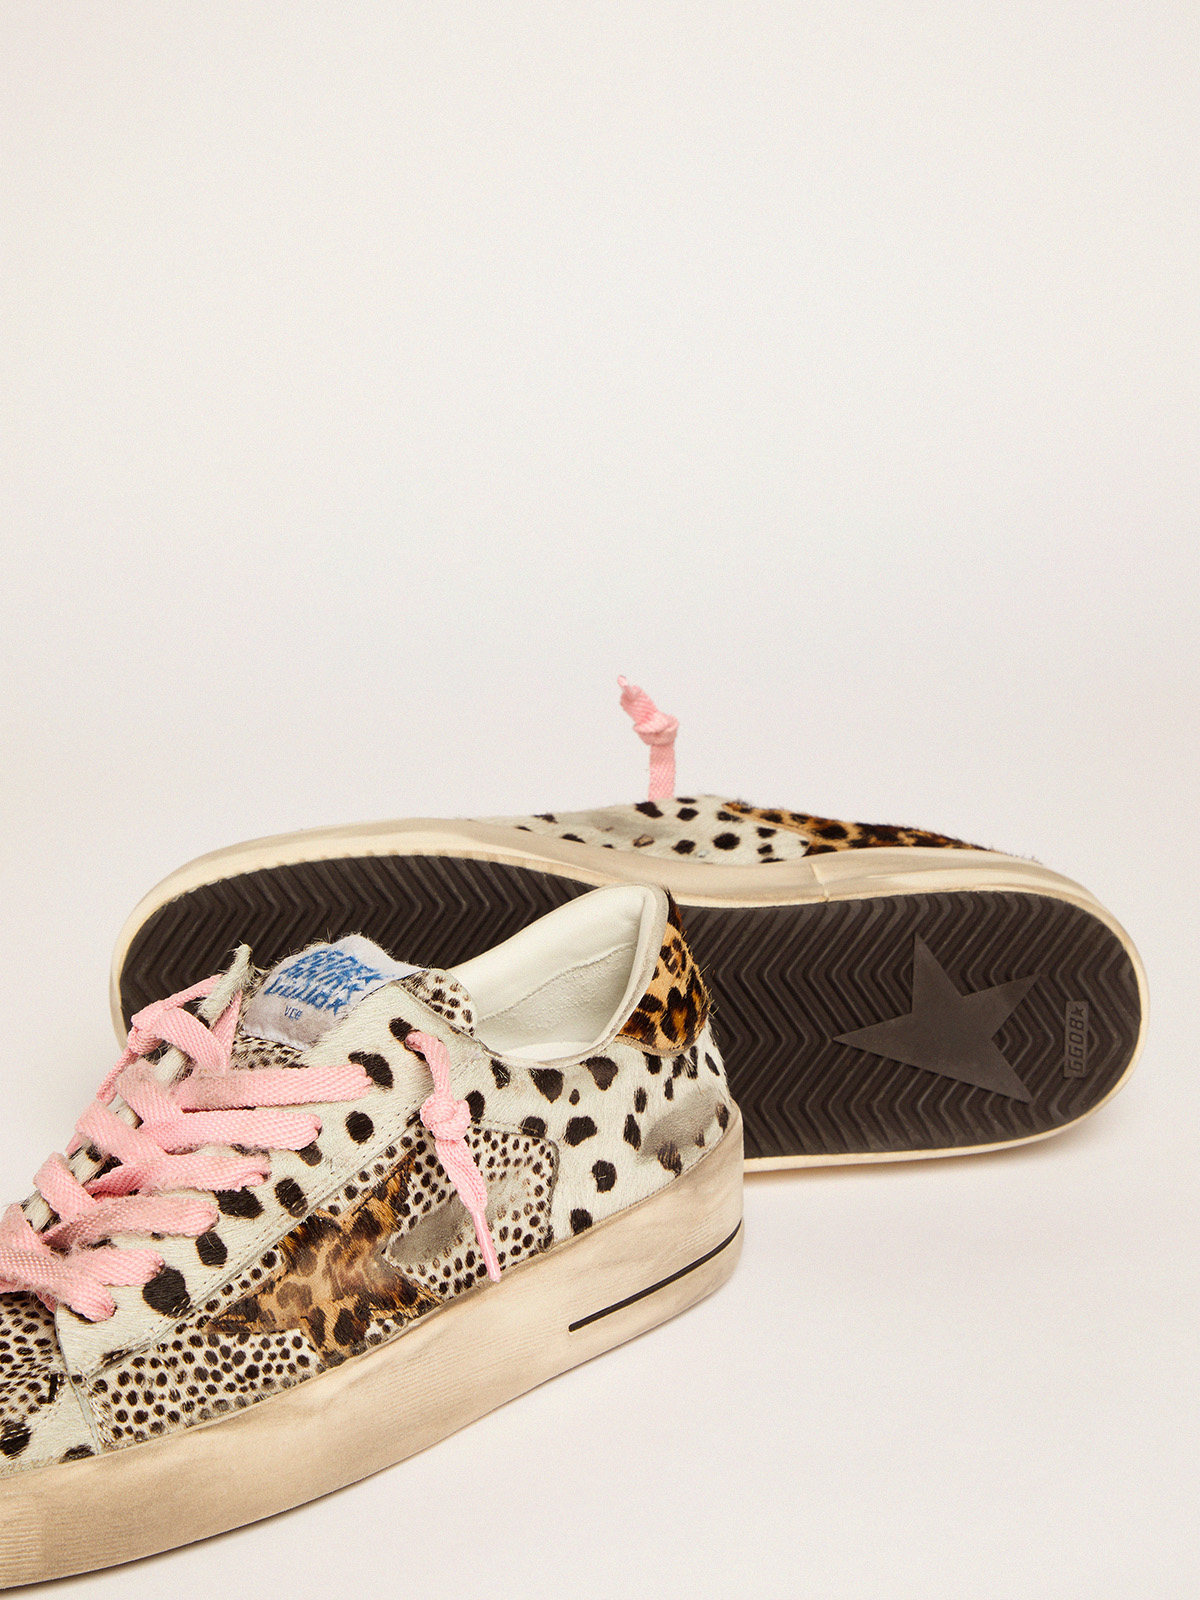 Stardan sneakers in polka-dot pony skin with leopard-print pony skin star |  Golden Goose